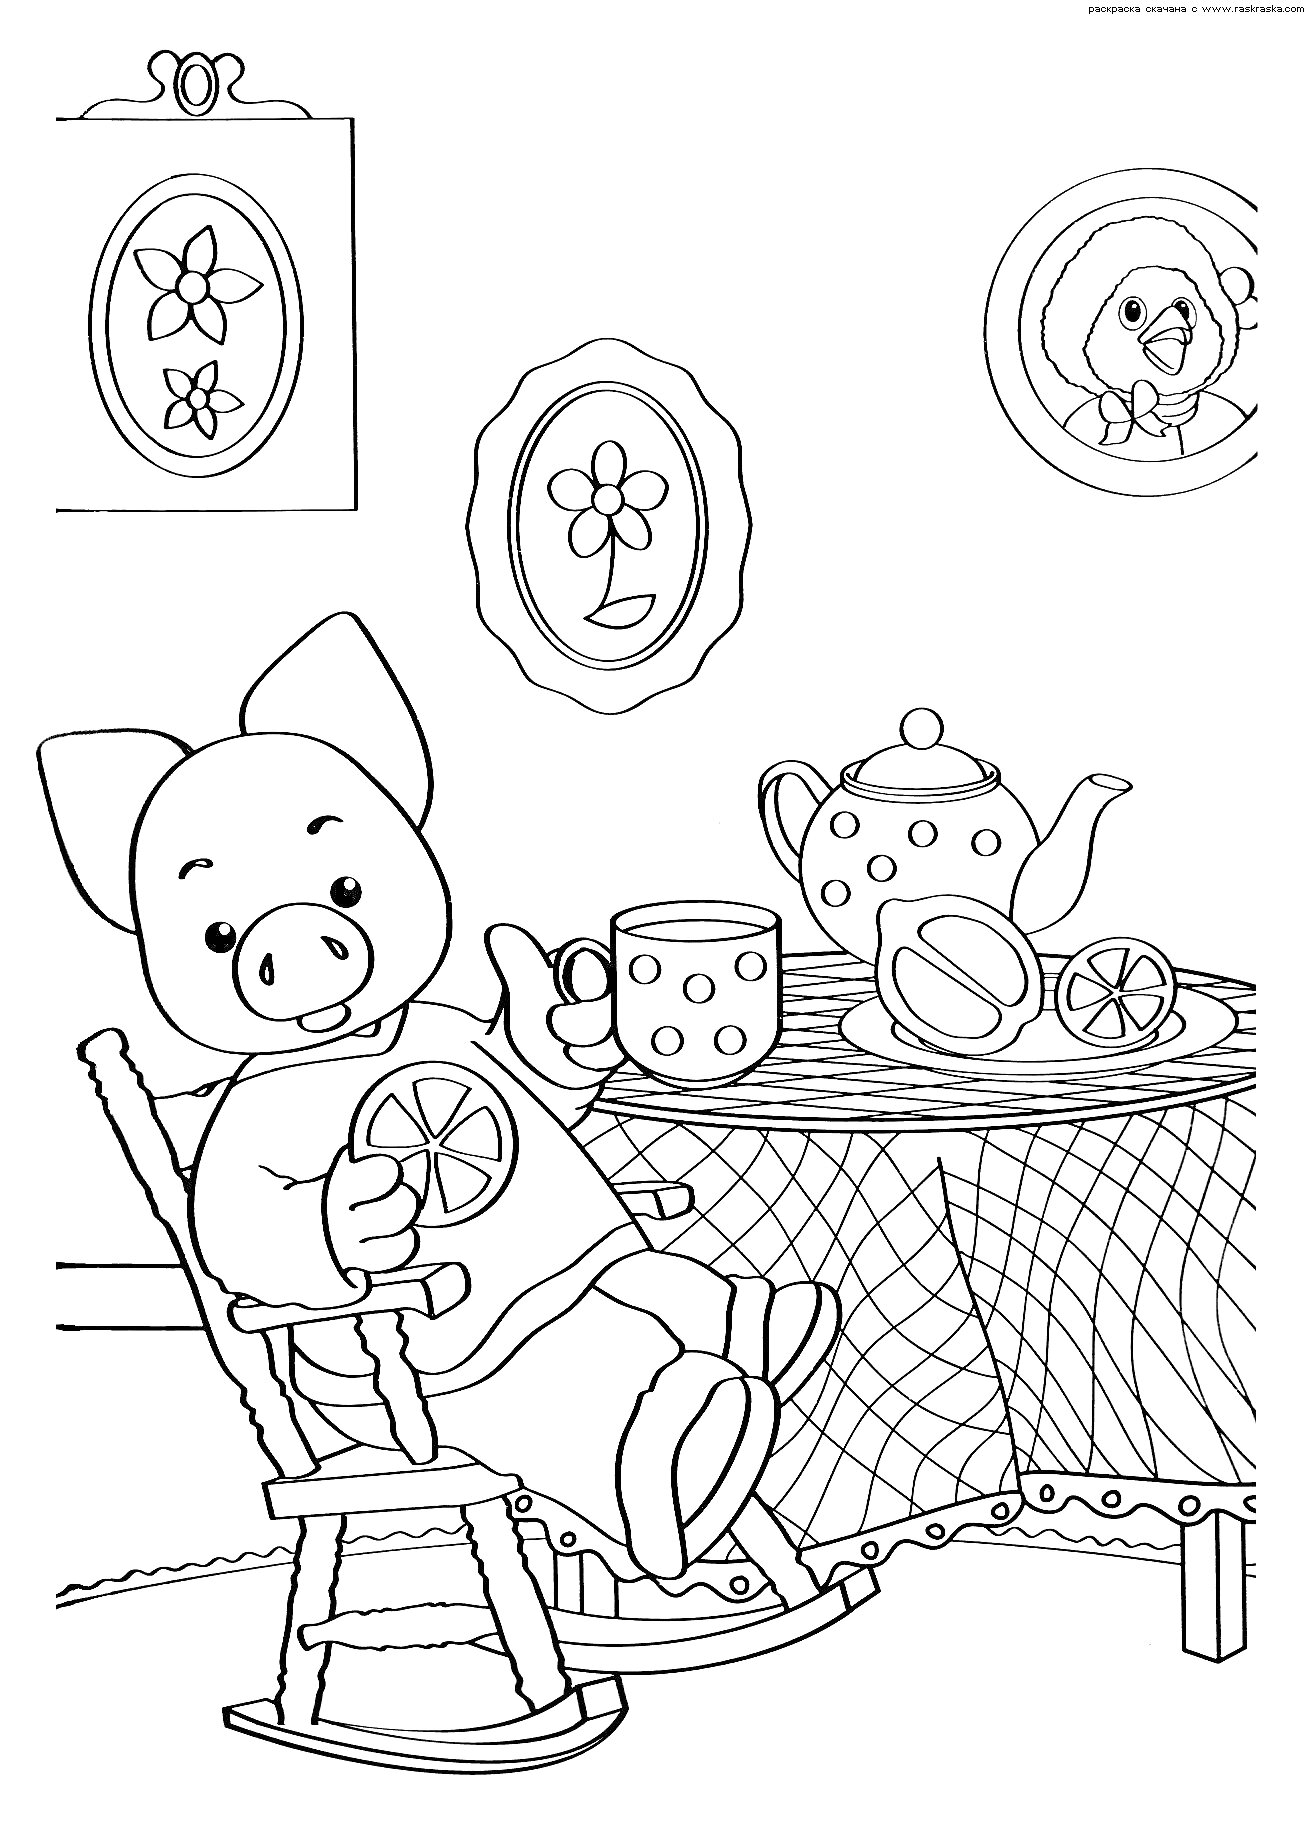 Поросёнок на кресле-качалке с кружкой чая, стол с чайником и чашками, картины на стене